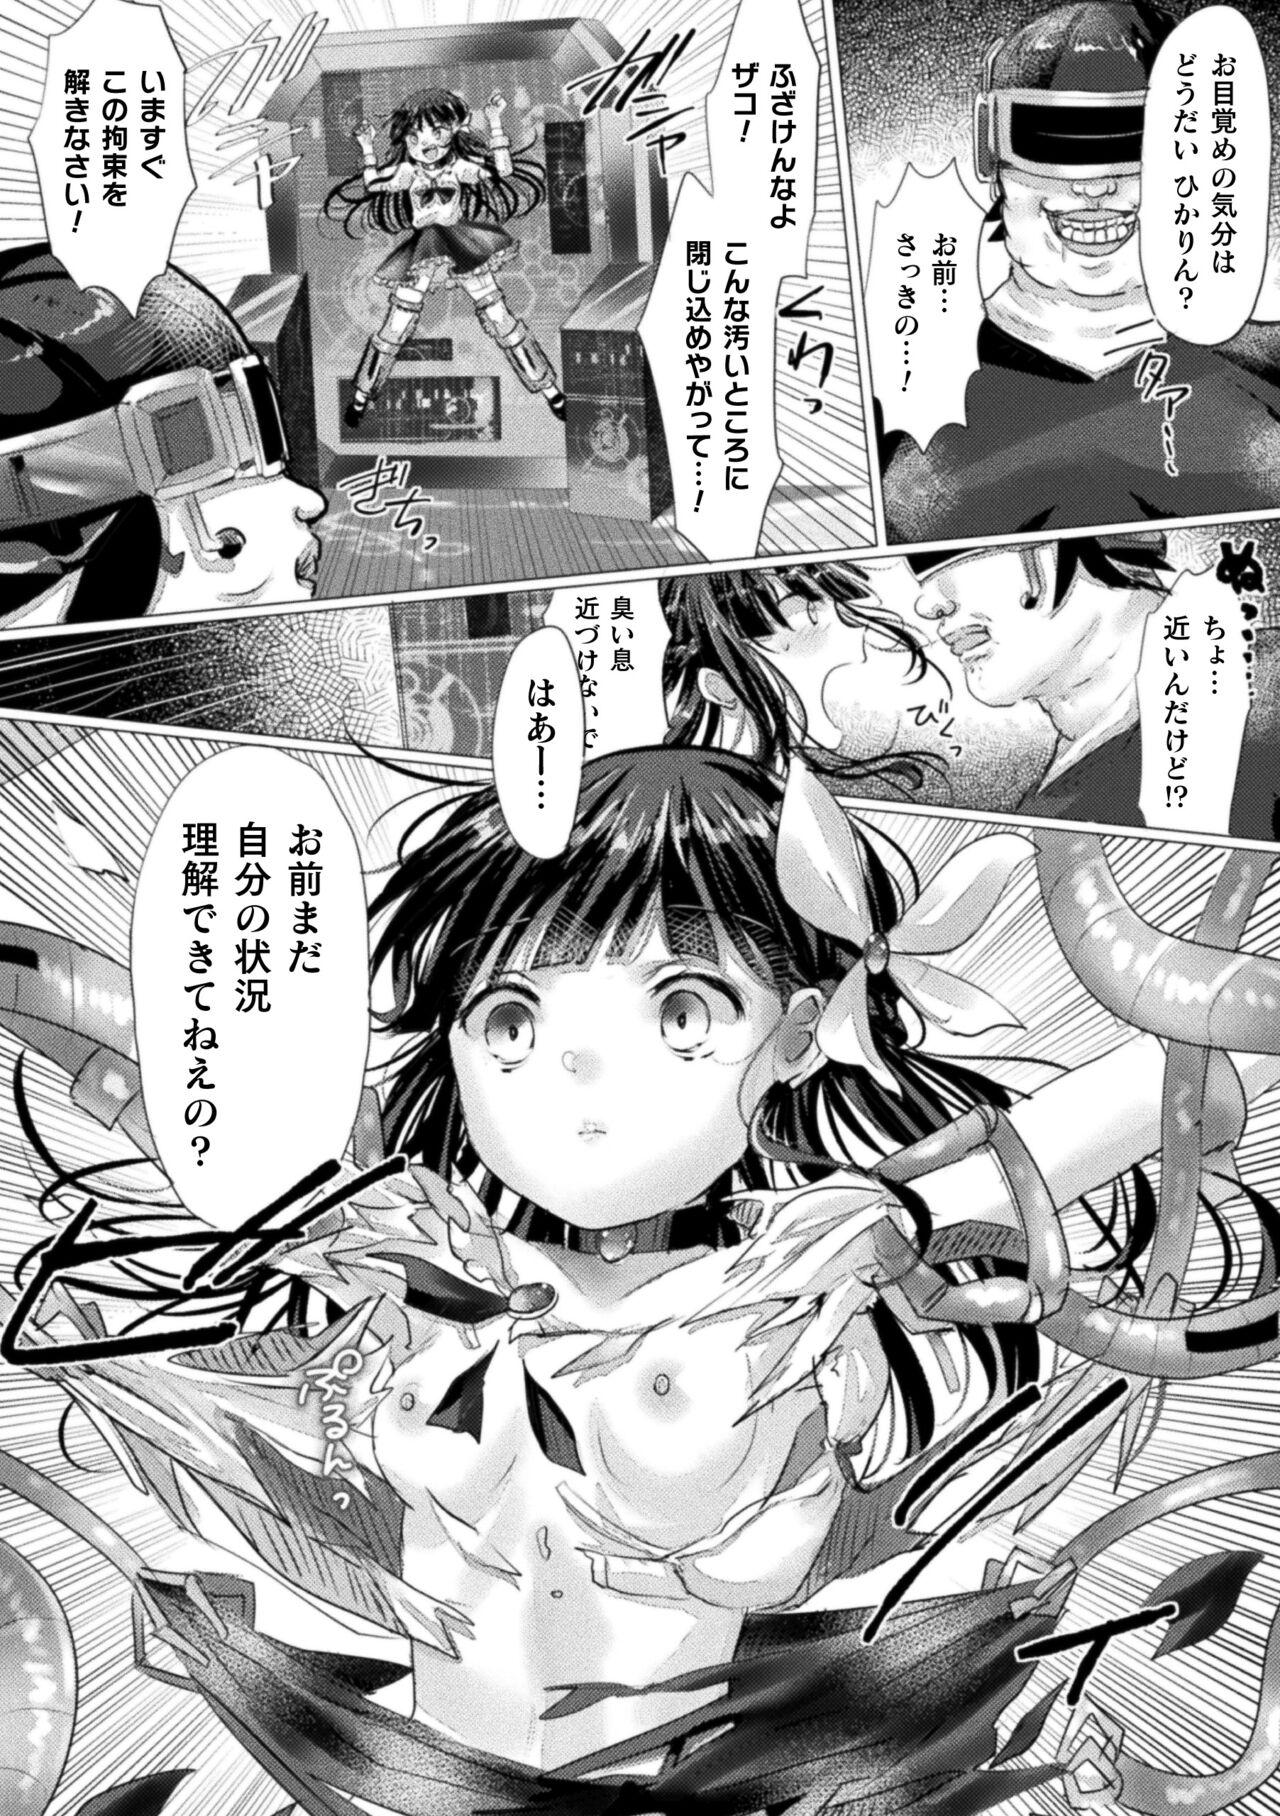 2D Comic Magazine Mesugaki Henshin Heroine Kikaikan Seisai Hijou no Wakarase Machine de Renzoku Loli Acme Vol. 3 50